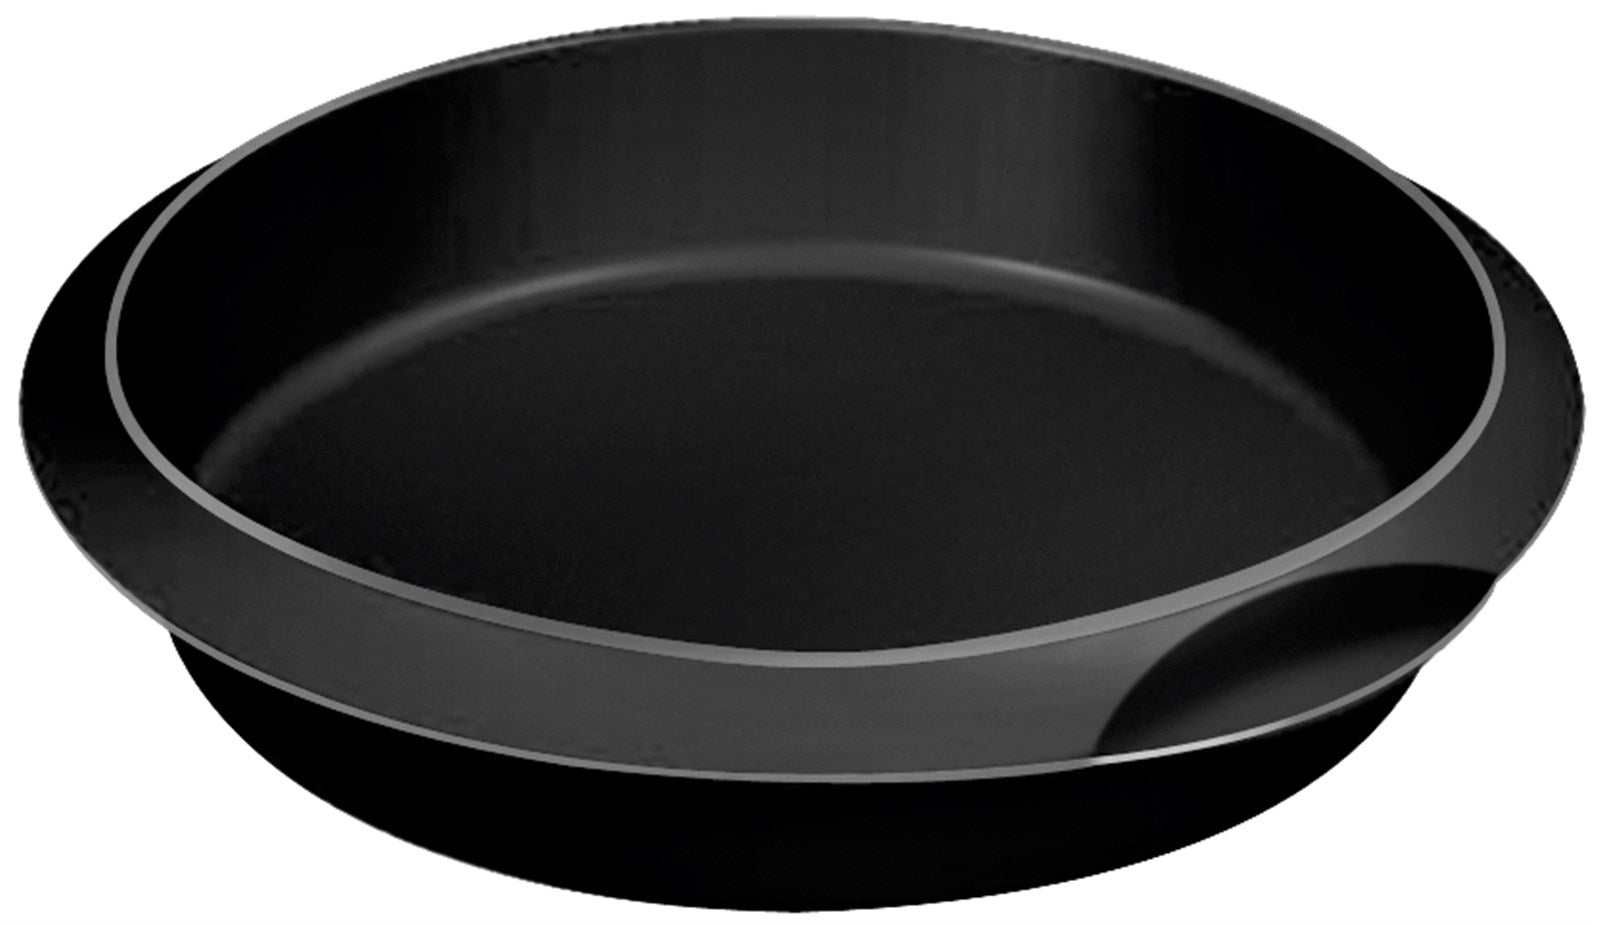 Backform Cake rund schwarz, 26 cm in Schwarz präsentiert im Onlineshop von KAQTU Design AG. Backen ist von Lékué